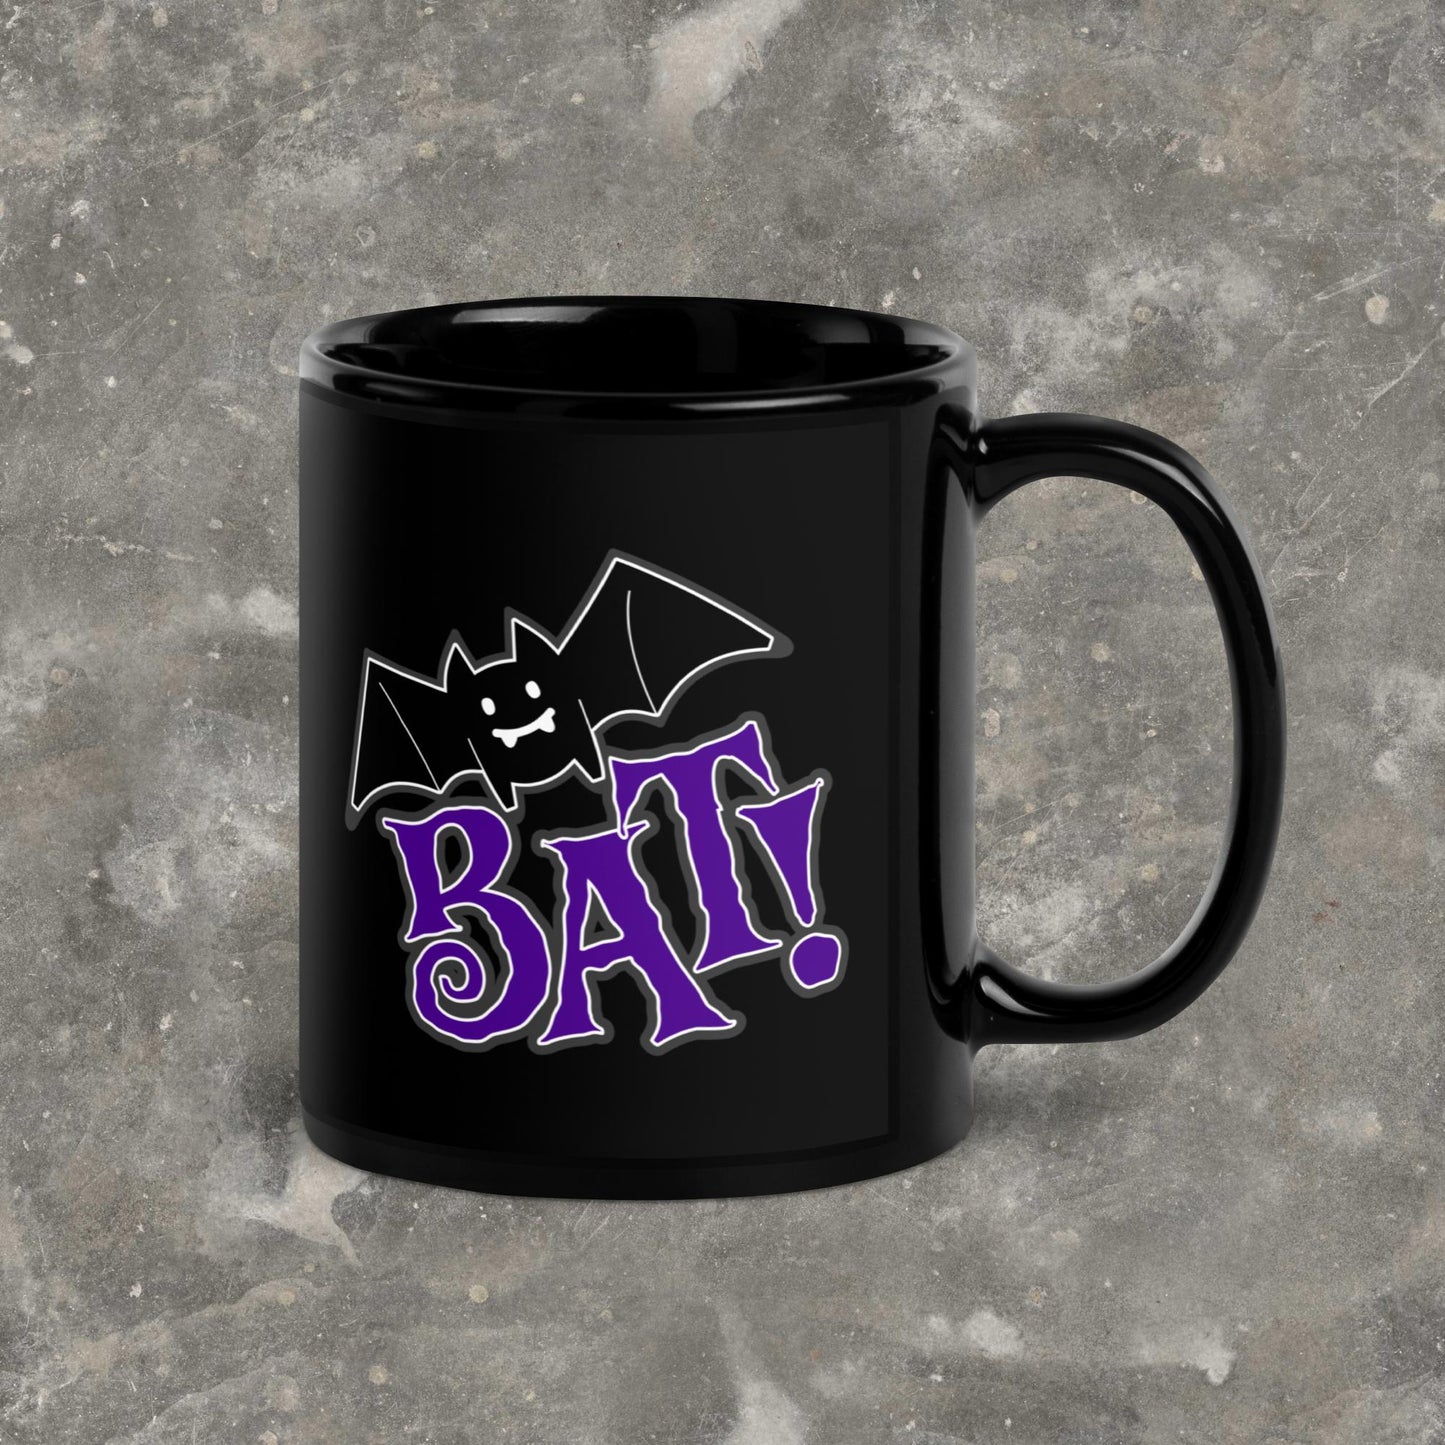 BAT! WWDITS What We Do in the Shadows Fanart Black Glossy Mug